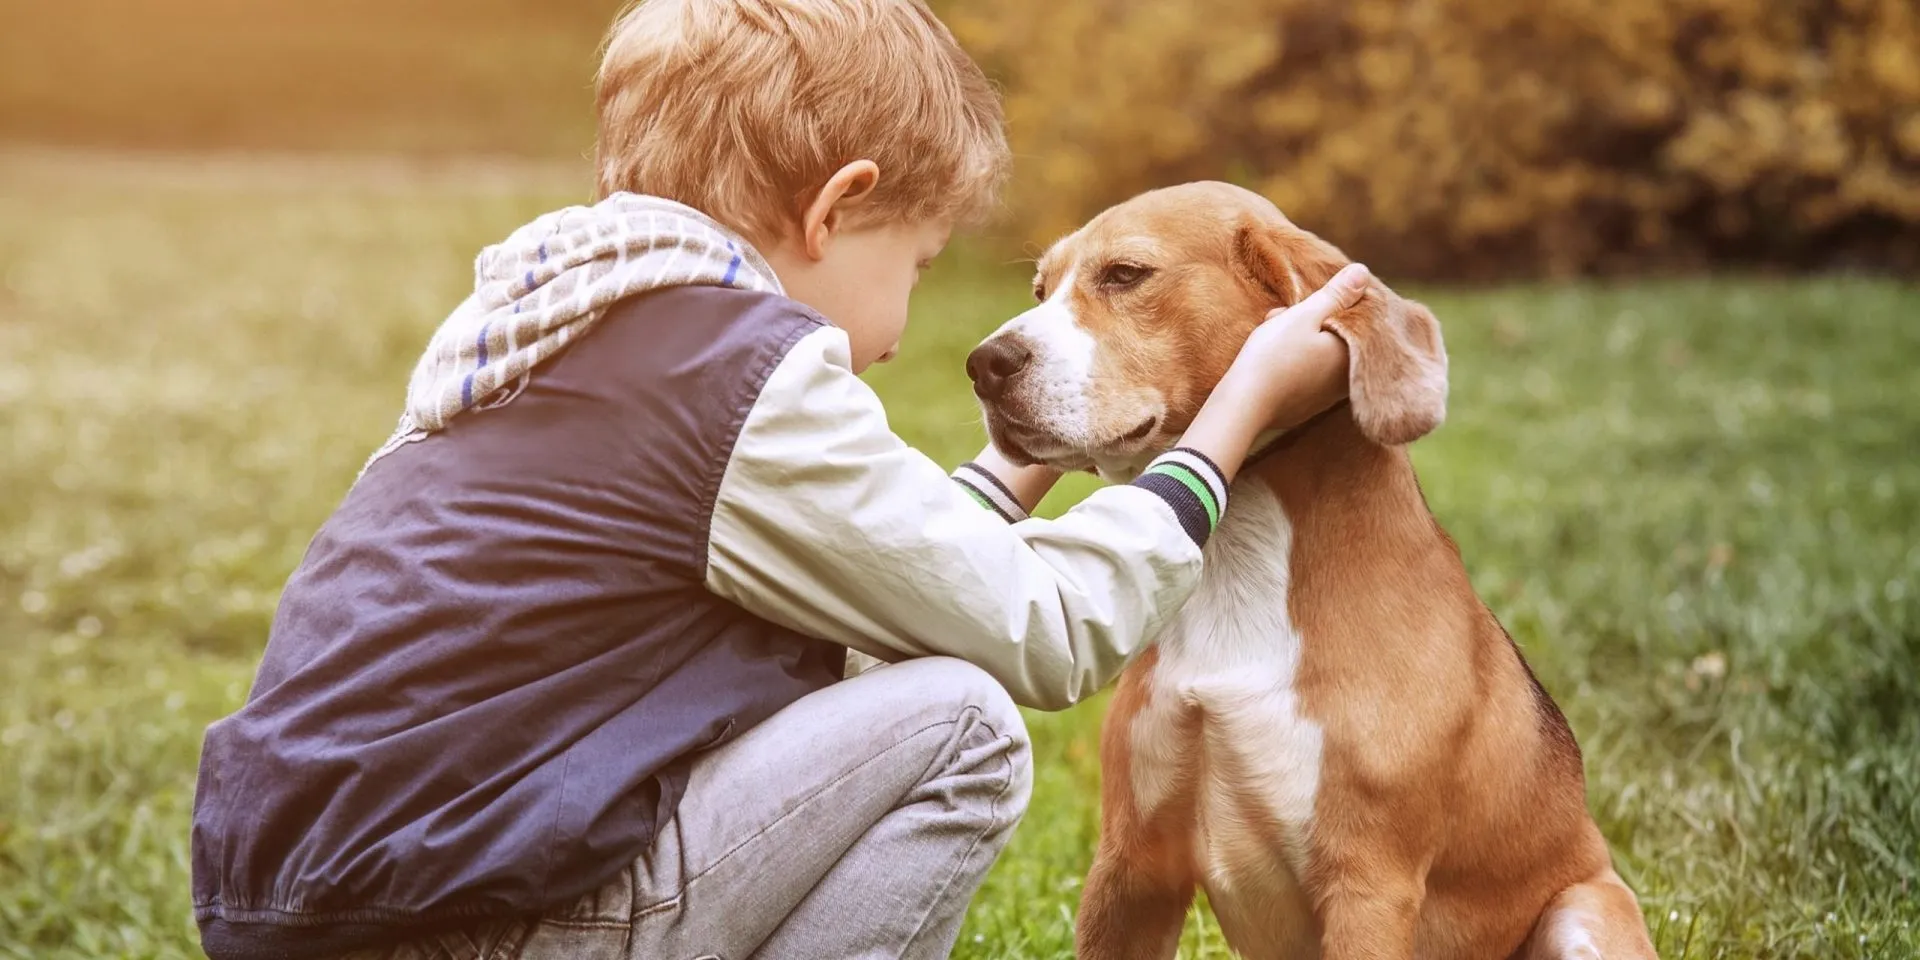 Какой самый 1 друг человека. Собака друг человека. Собака - лучший друг. Человек с собакой. Собаки лучшие друзья человека.